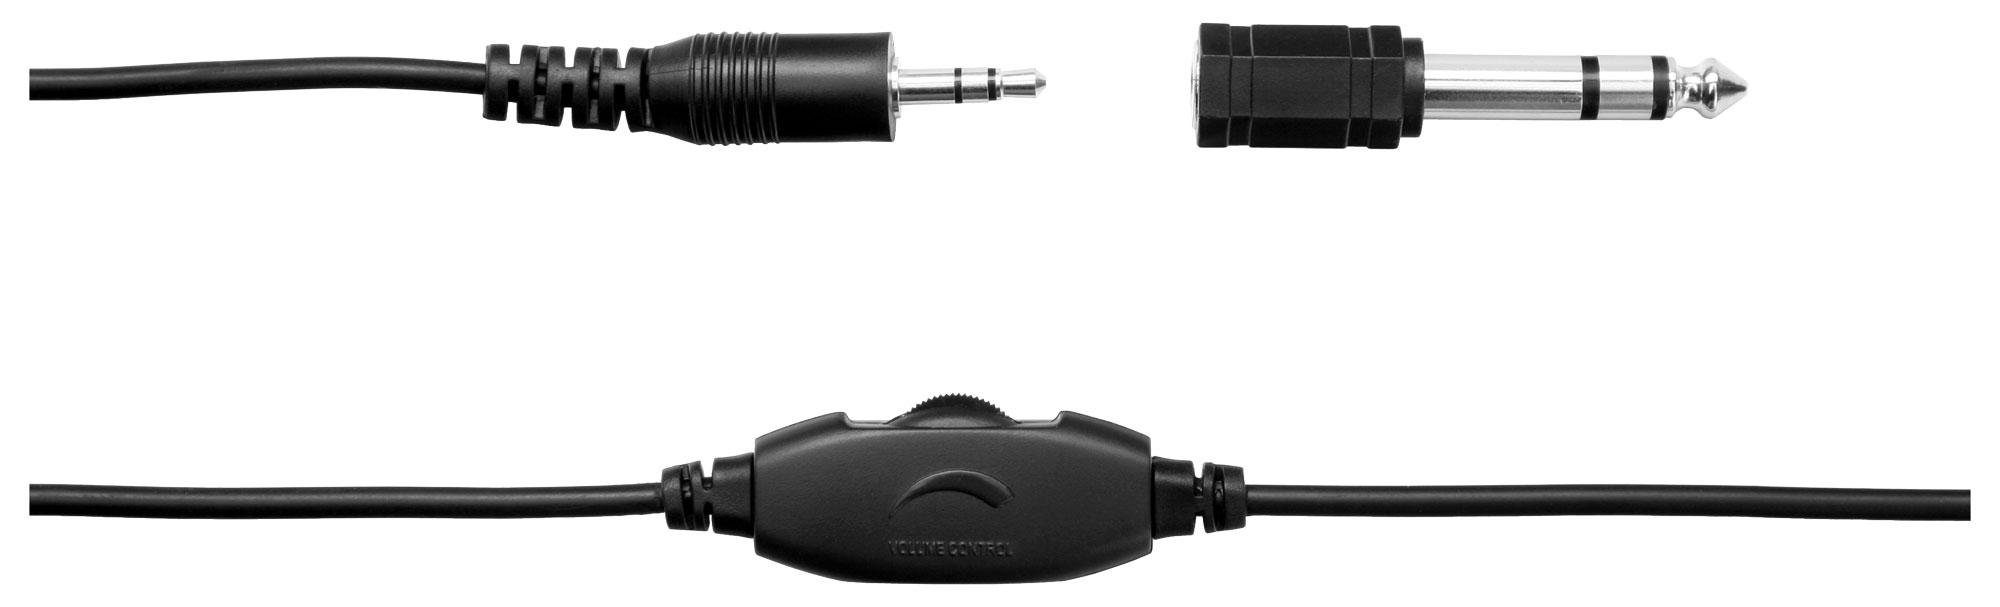 integriertem KH-238 Lautstärkeregelung Aktiv-Bass) und Classic Cantabile Over-Ear-Kopfhörer (Mit